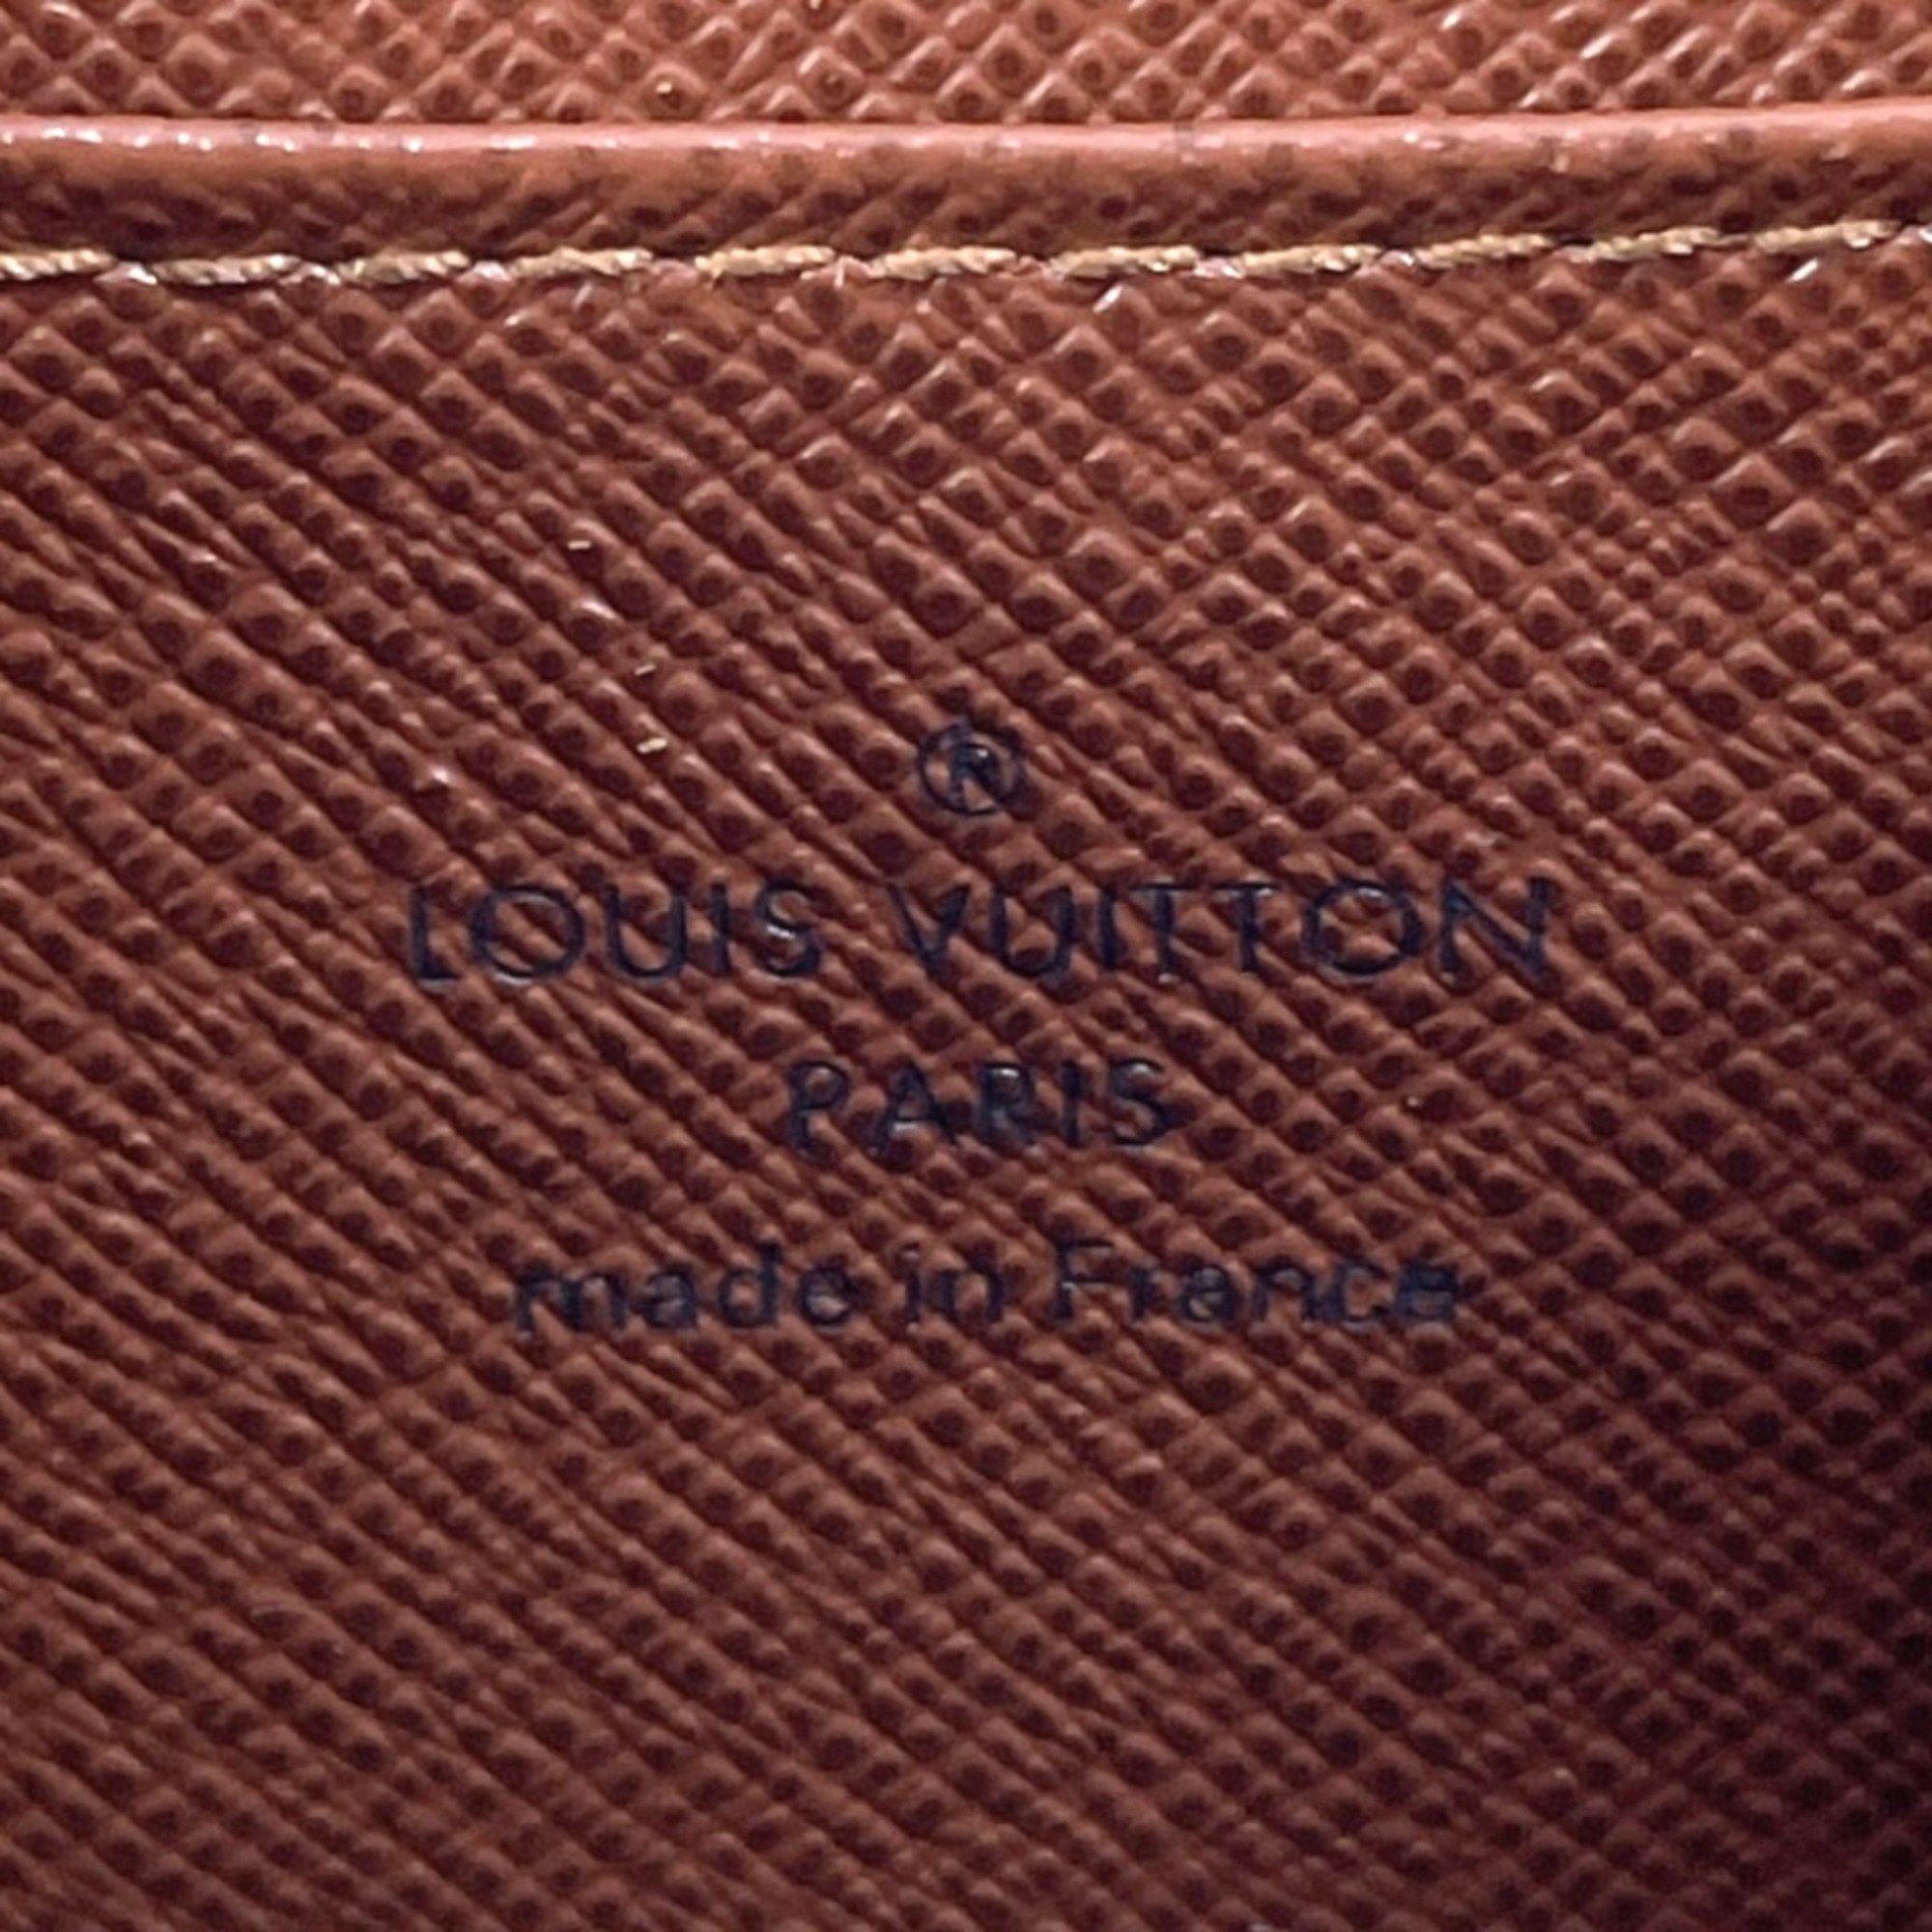 LOUIS VUITTON Louis Vuitton Zippy Coin Purse M60067 Case Monogram Canvas Brown Unisex